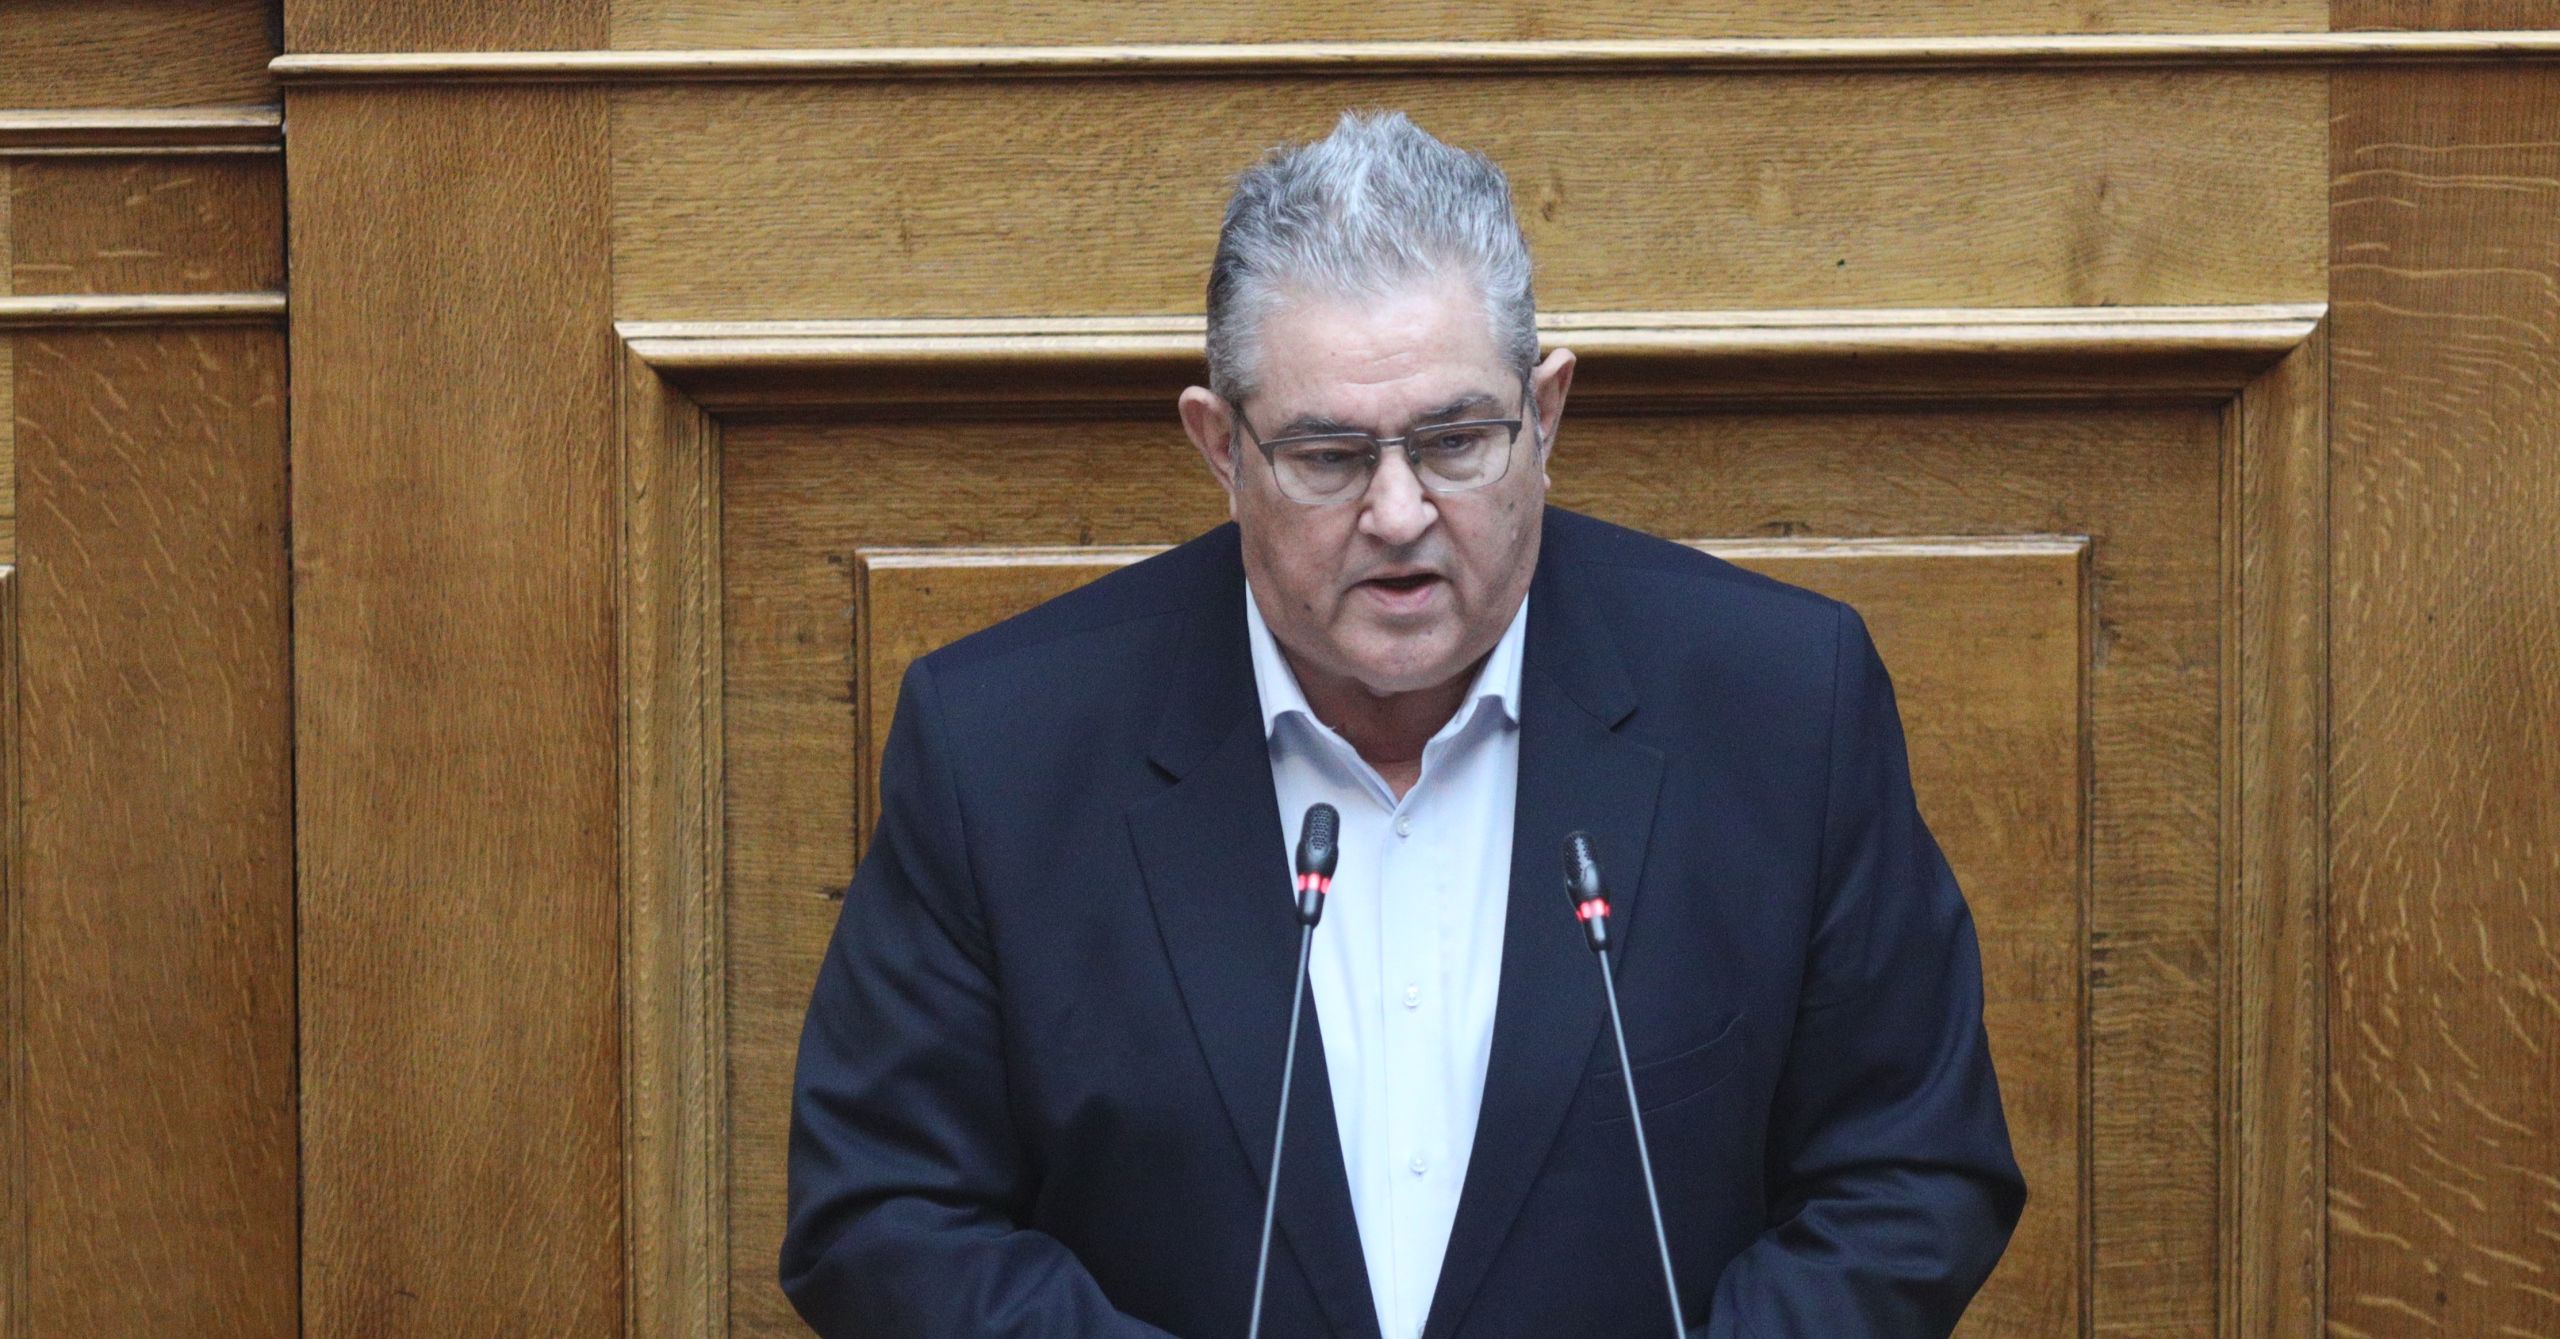 Επιστολική ψήφος ΚΚΕ: “Να αποσυρθεί το άθλιο και επικίνδυνο νομοσχέδιο”